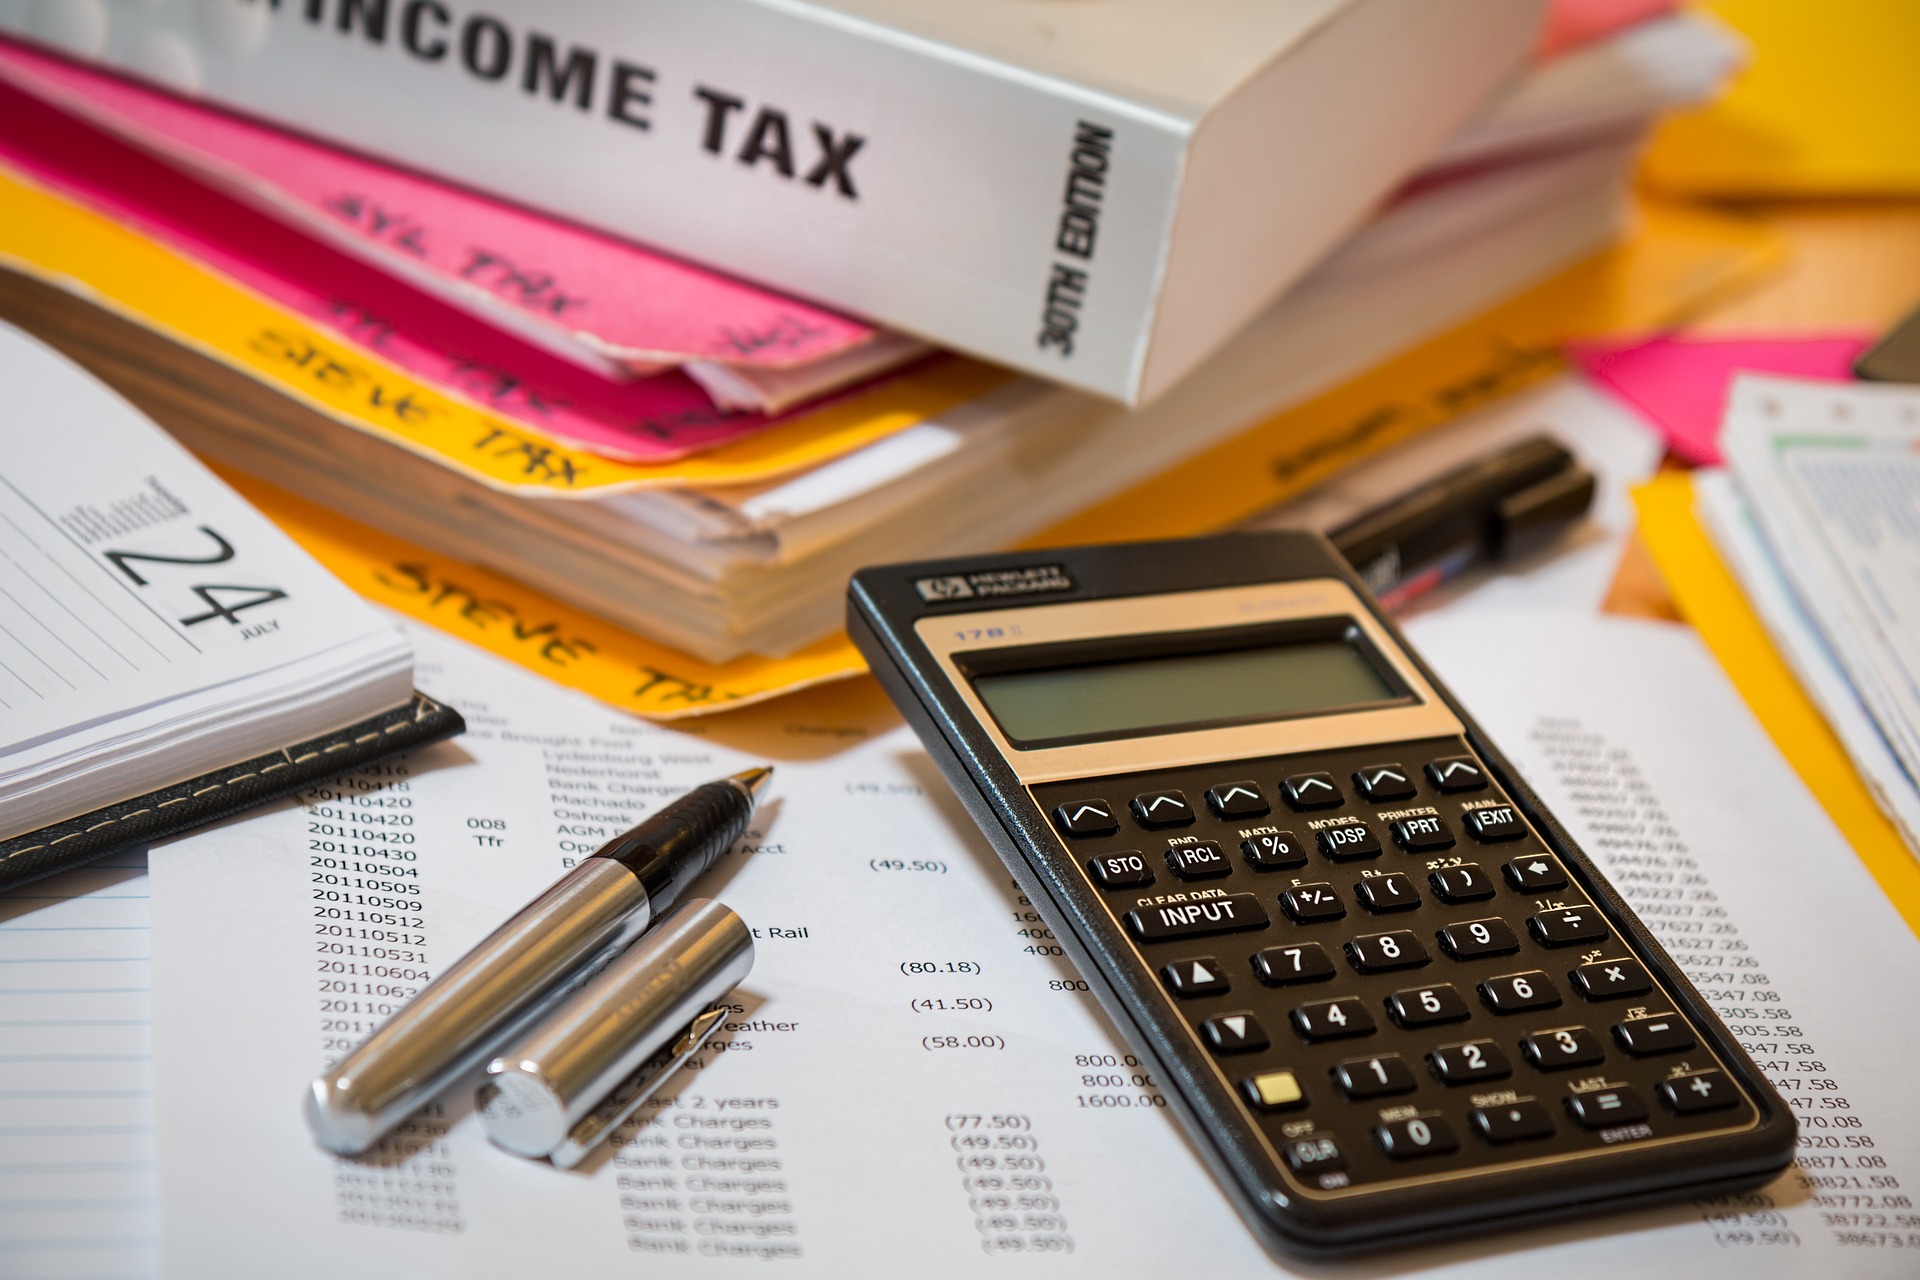 Classeur, calculatrice et autres documents pour remplir la déclaration d'impôts.